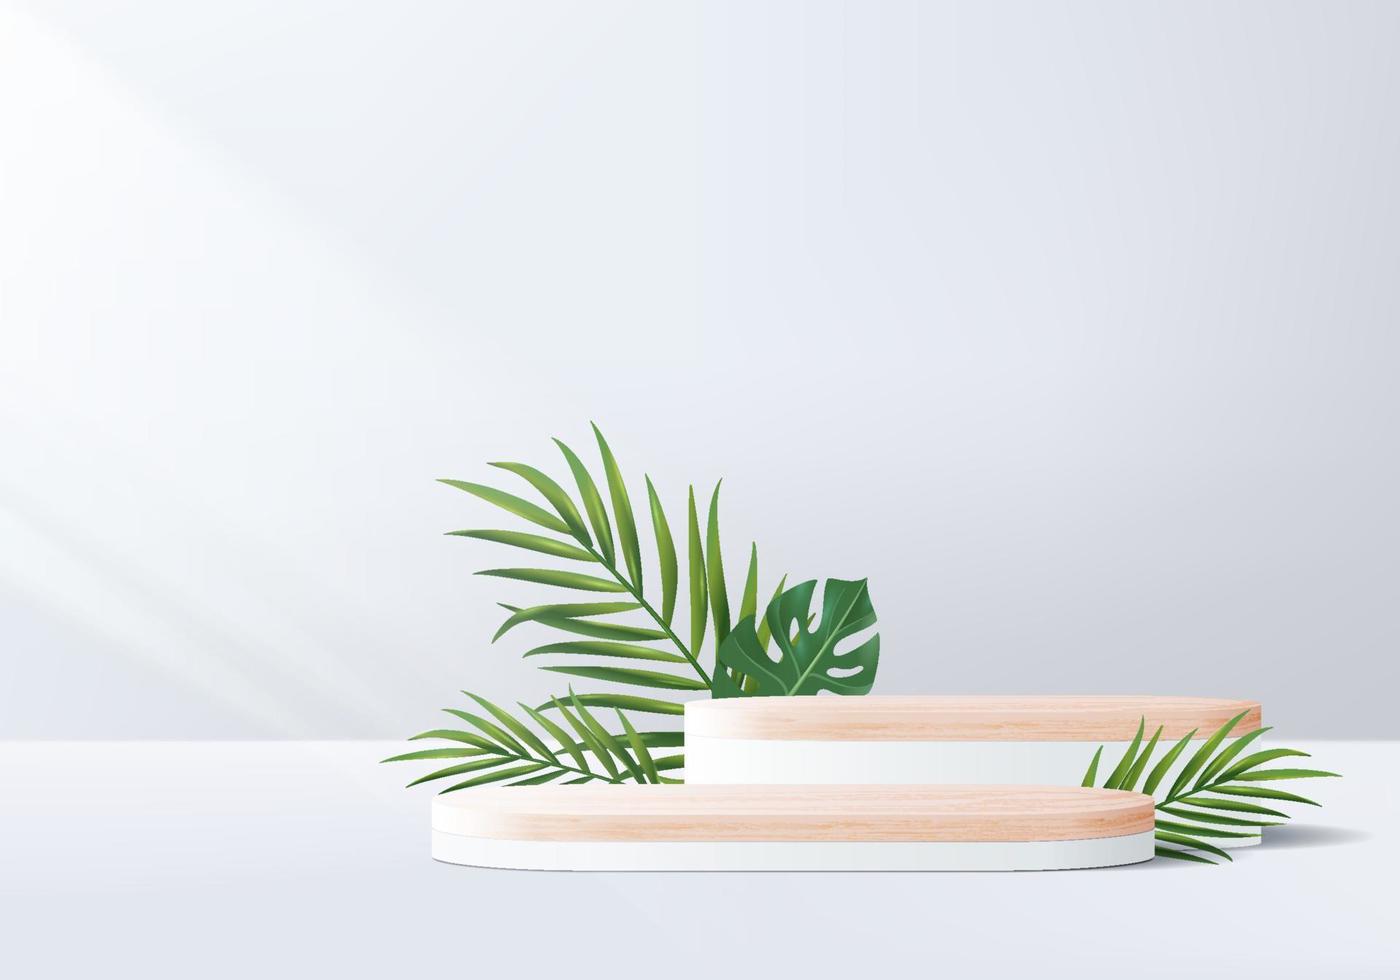 Nếu bạn đang tìm kiếm một sản phẩm nội thất độc đáo để tăng thêm vẻ đẹp cho ngôi nhà của mình, thì chiếc bục làm bằng gỗ sẽ làm bạn hài lòng. Hãy xem hình ảnh về chiếc bục này để cảm nhận được sự sang trọng và bền vững của bục gỗ.